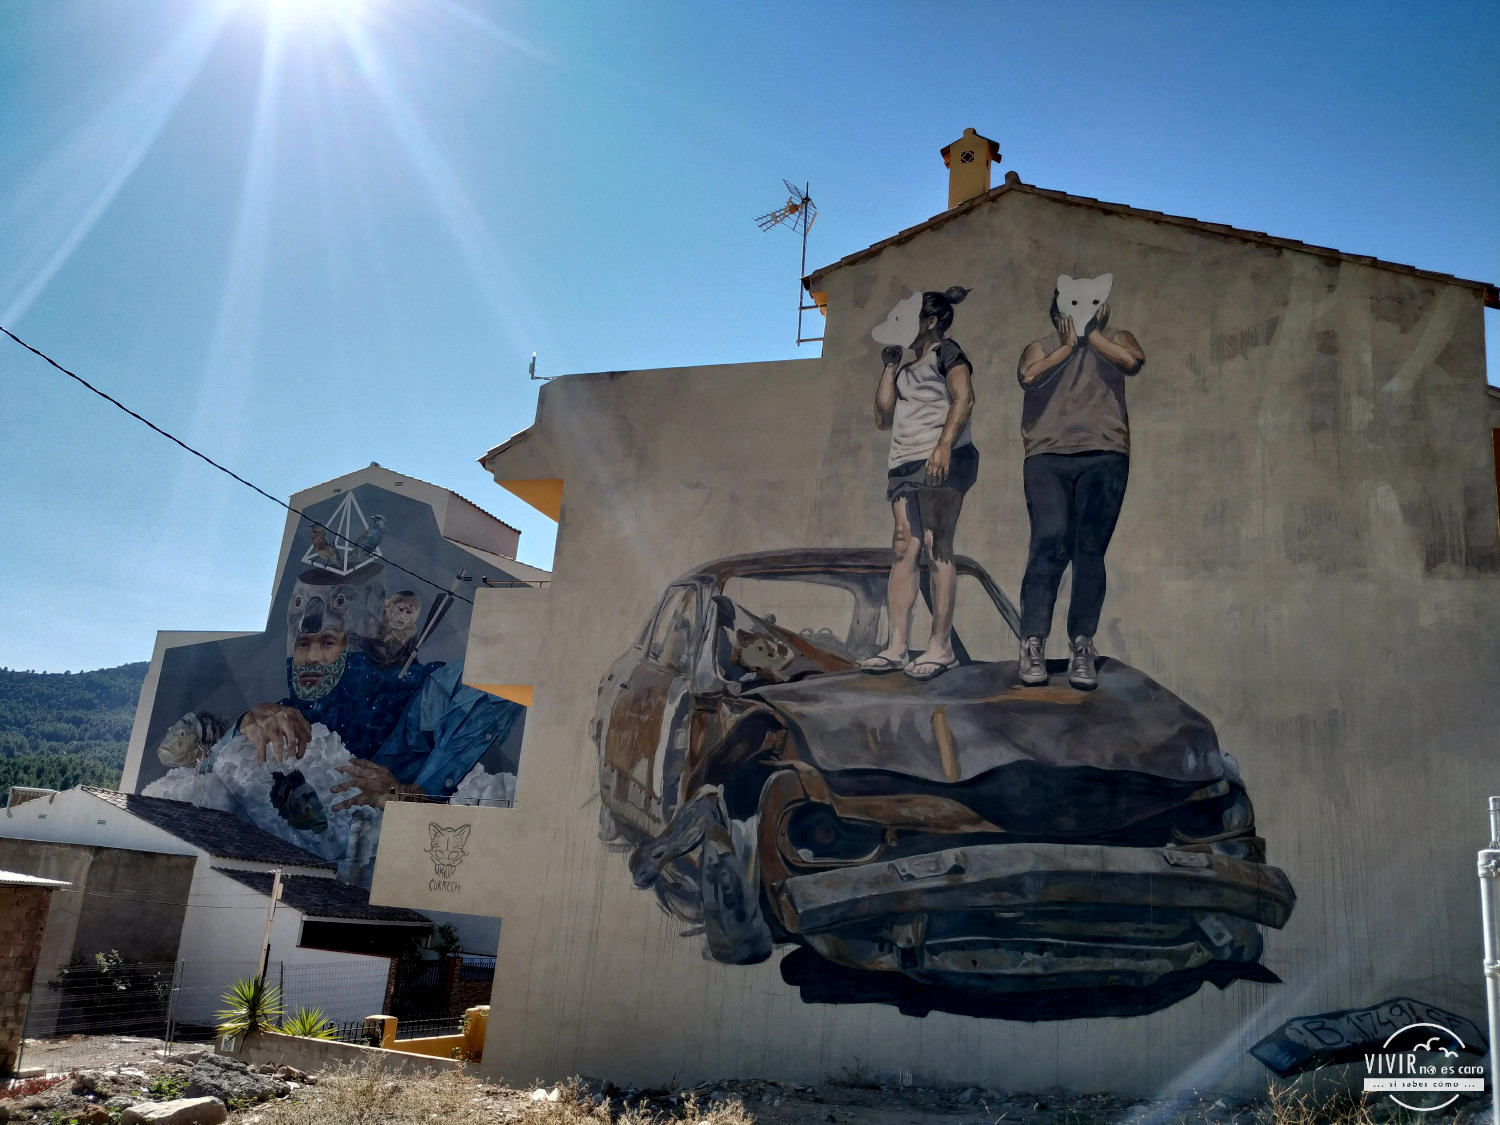 Graffiti coche destrozado en Fanzara (Castellón)